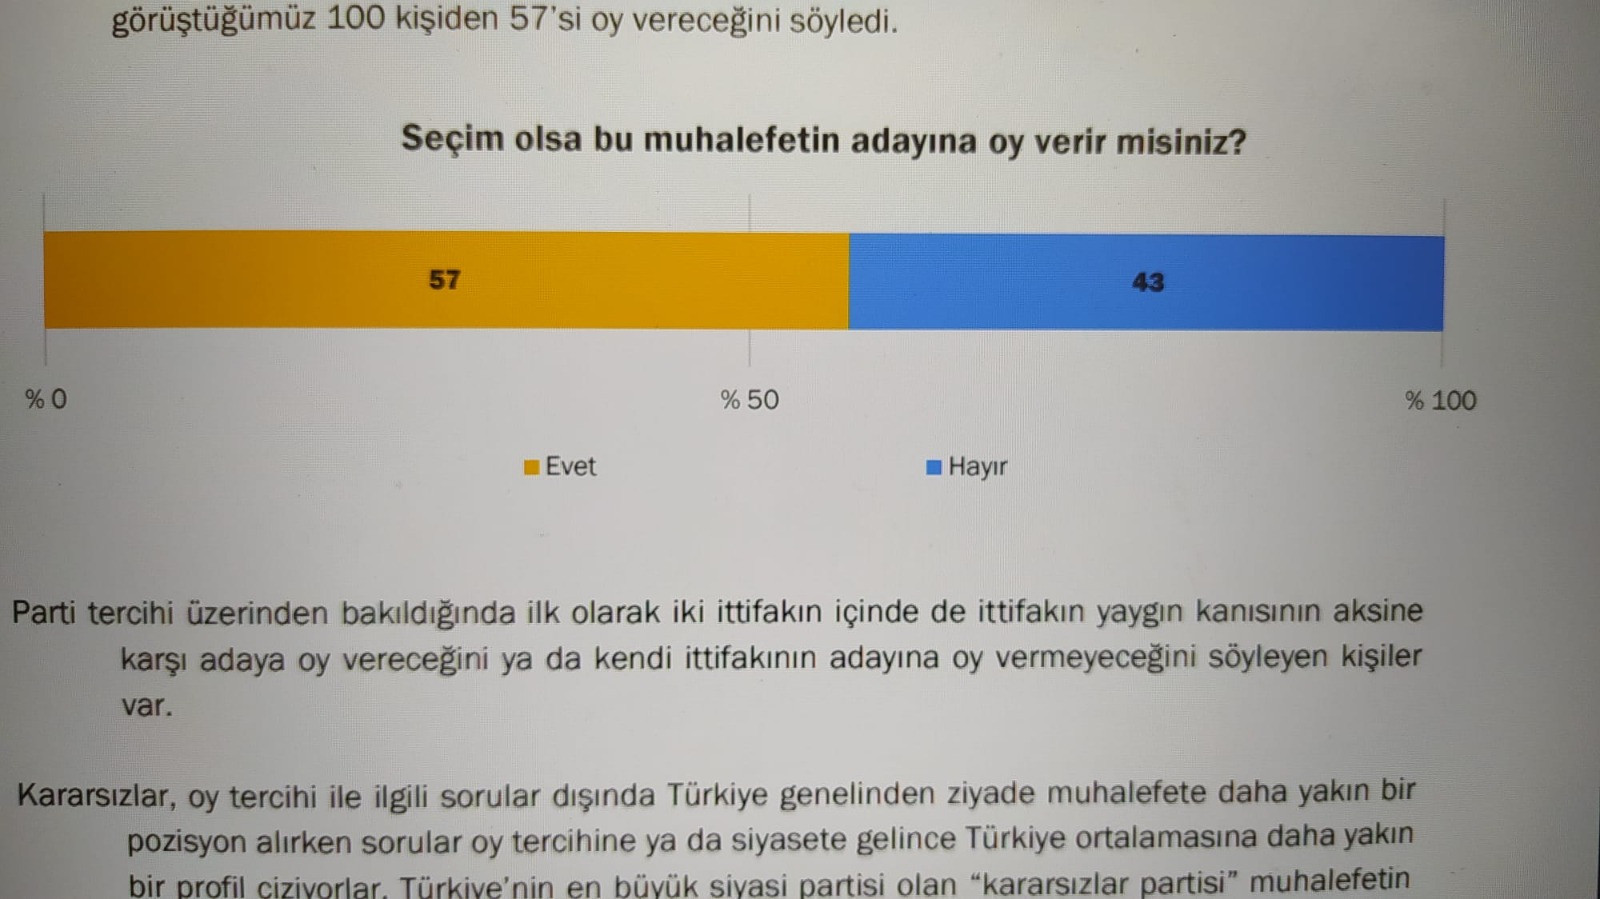 'Herkesin birbirine sorduğu anket gerçek': KONDA'ya göre 'Muhalefetin adayına oy veririm' diyenlerin oranı yüzde 57 - Resim : 1